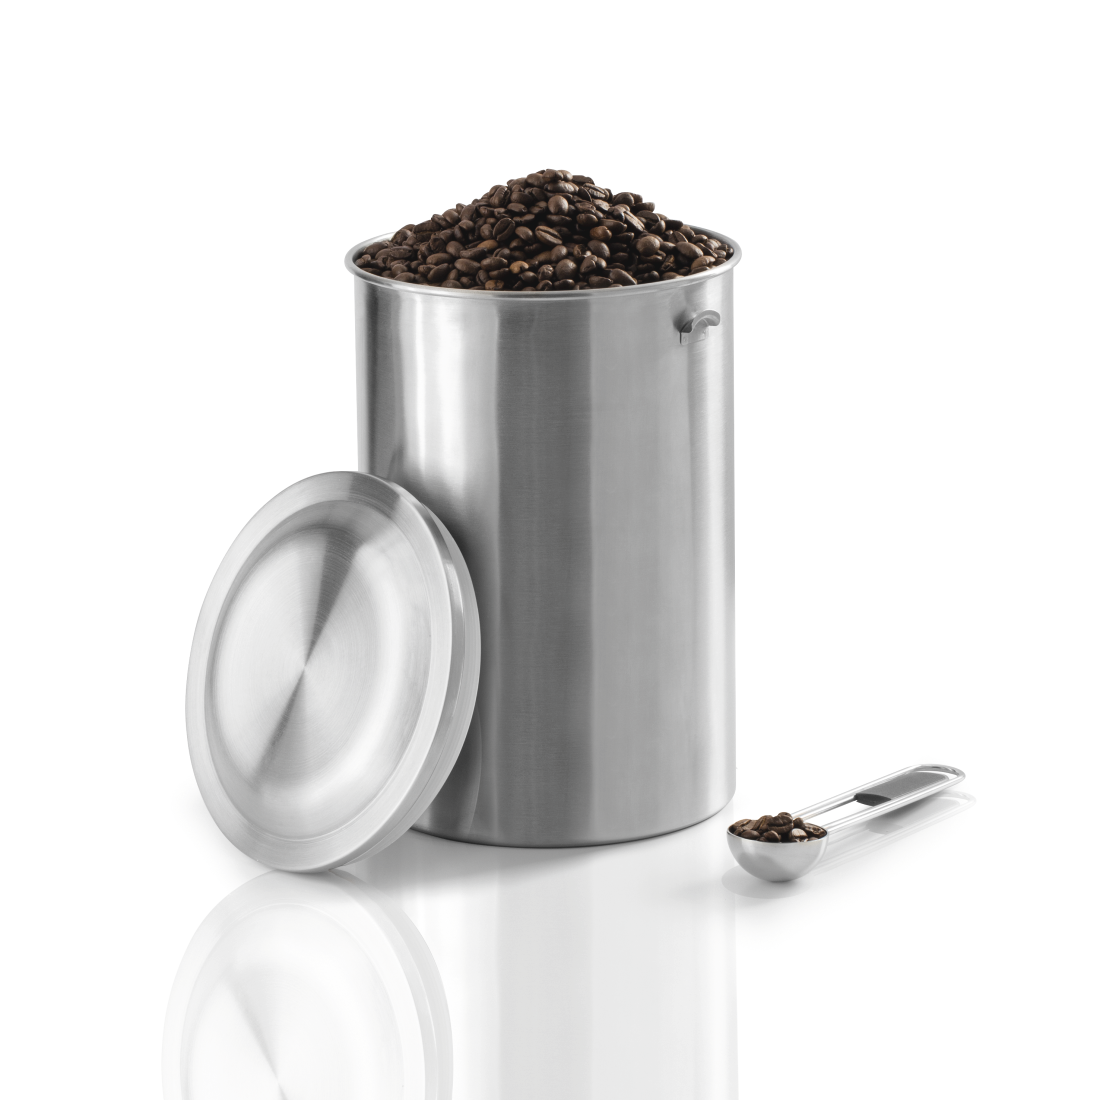 abx3 High-Res Image 3 - Xavax, Boîte en acier inox. pr 1 kg de grains de café, avec cuillère, argent.